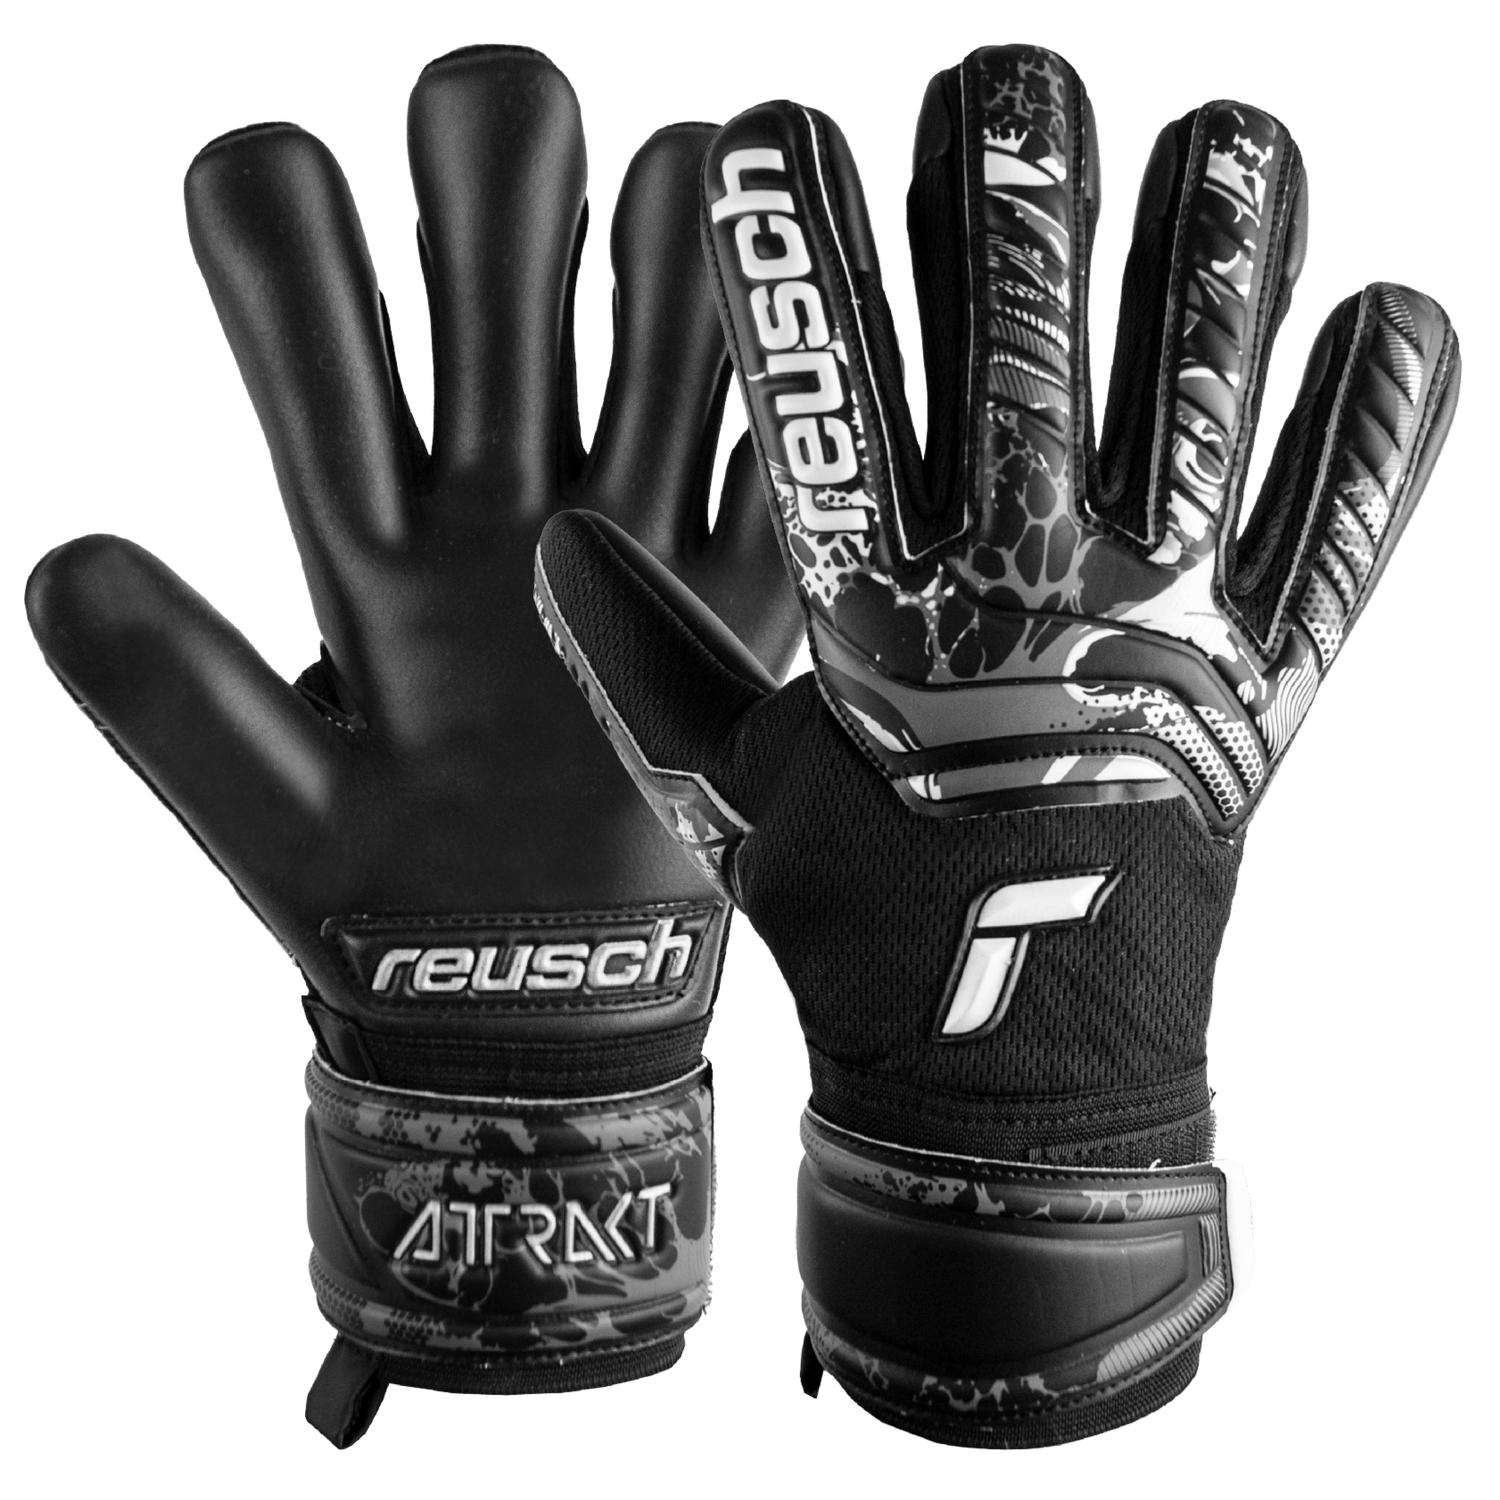 Reusch JR Attrakt Infinity FS Goalkeeper Gloves Black (Pair)